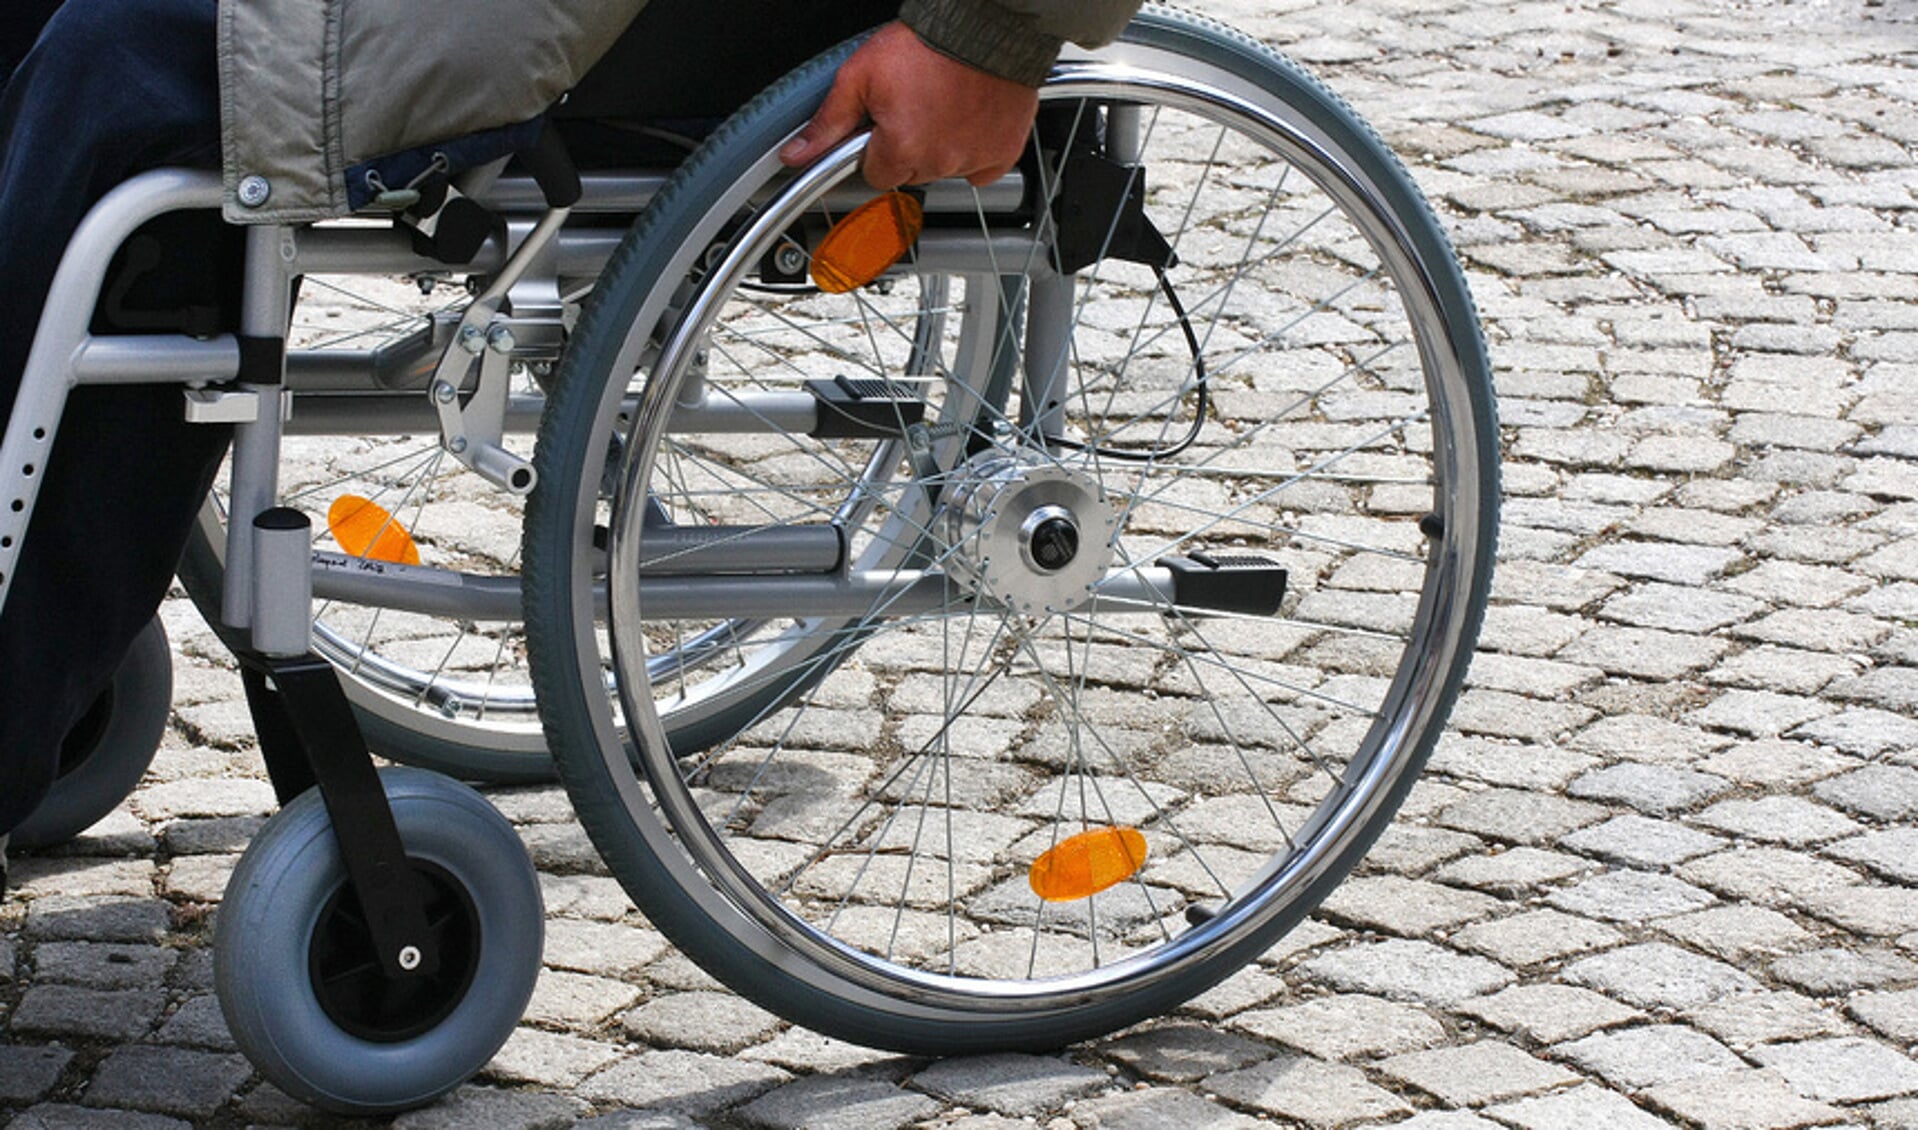 Er op uitgaan met de rolstoel is vaak een hele uitdaging. FOTO ARNOLD ALBRECHT/PIXELIODE